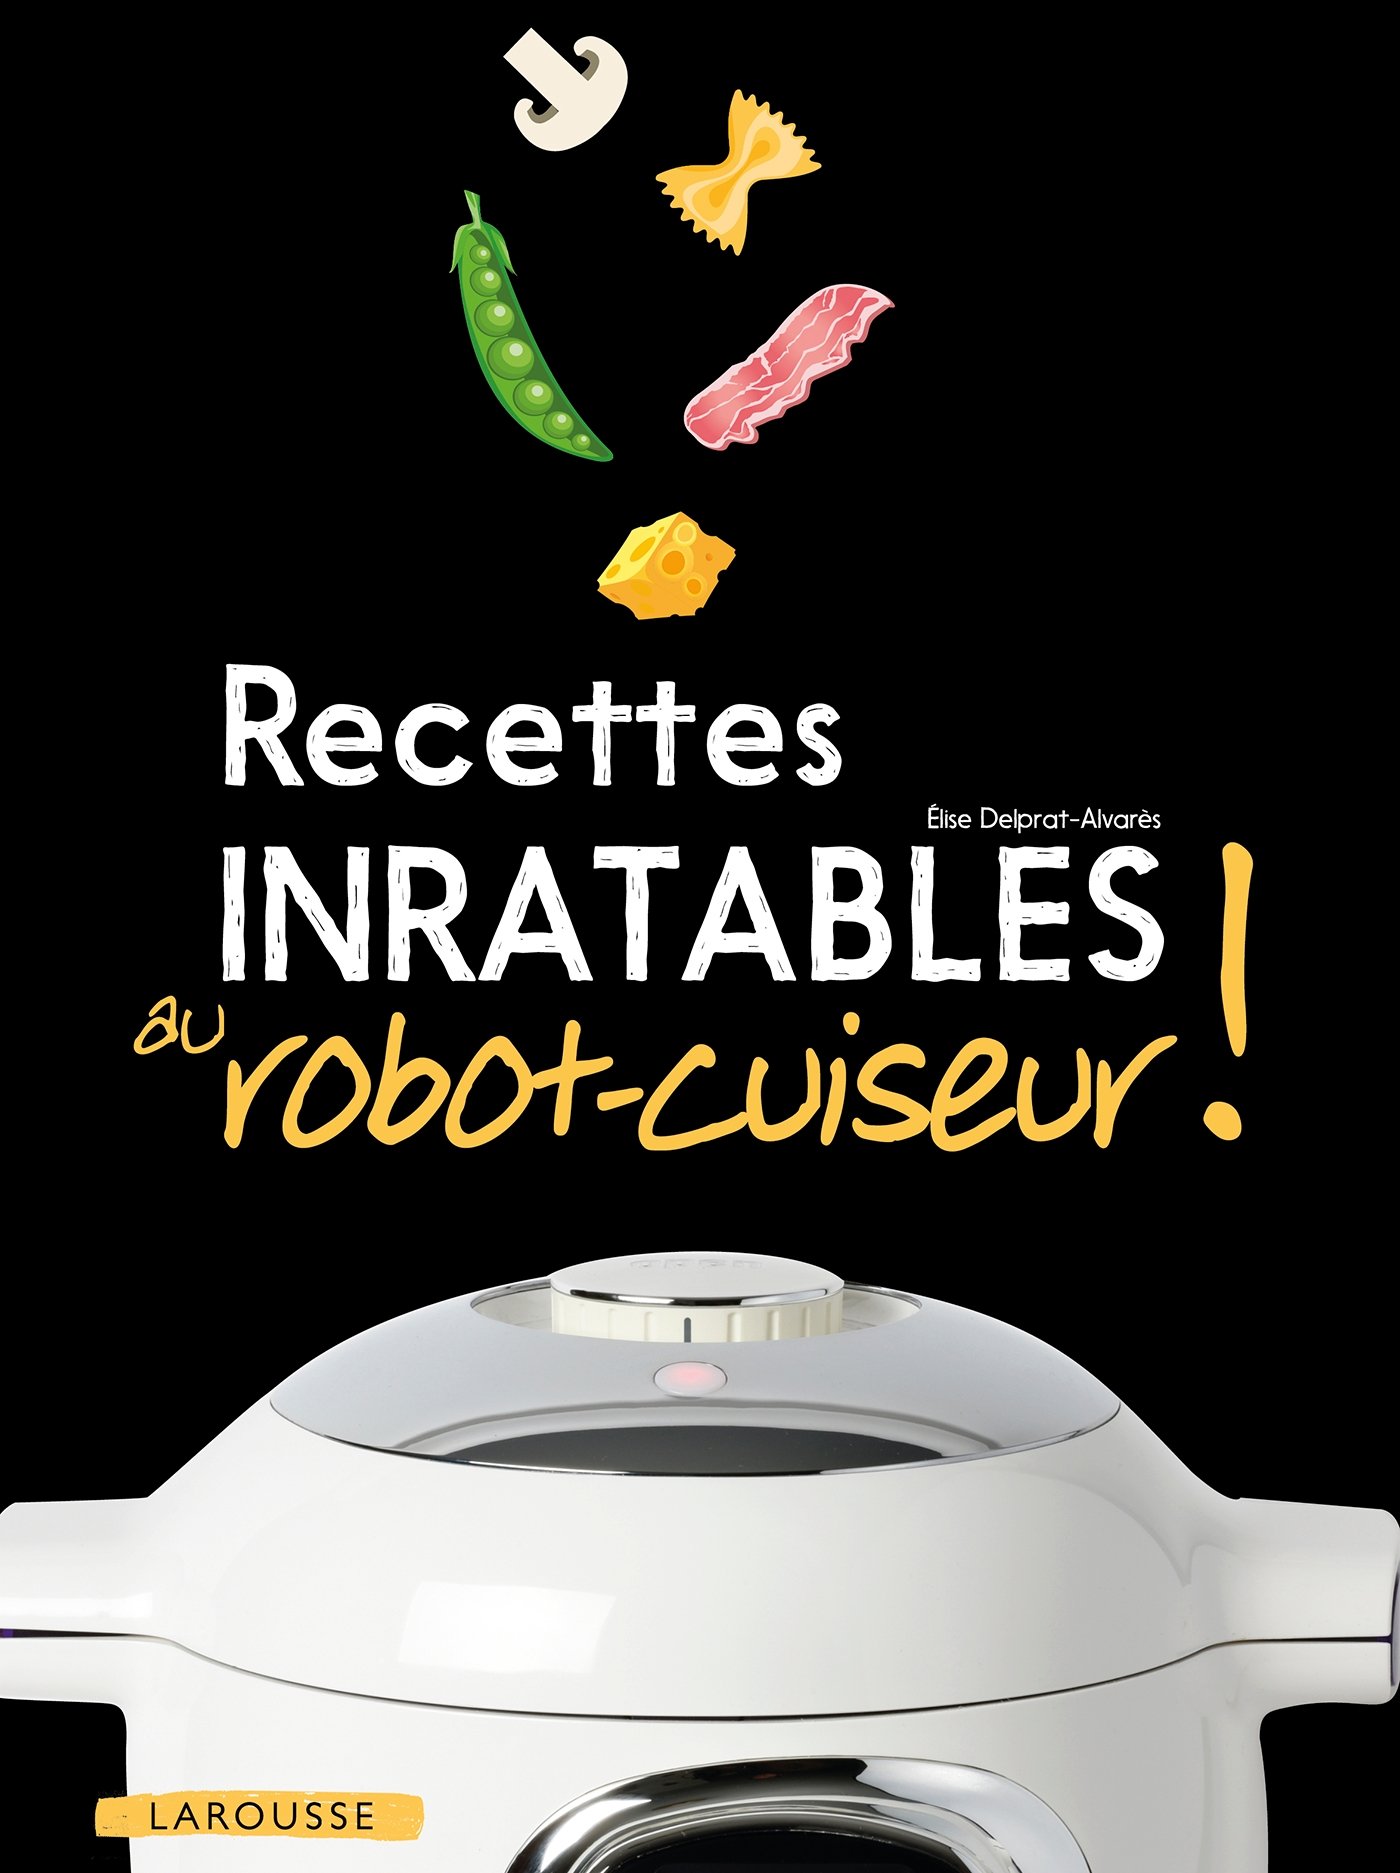 Recettes inratables au robot-cuiseur ! - Élise Delprat-Alvarès, Livre pas cher Amazon